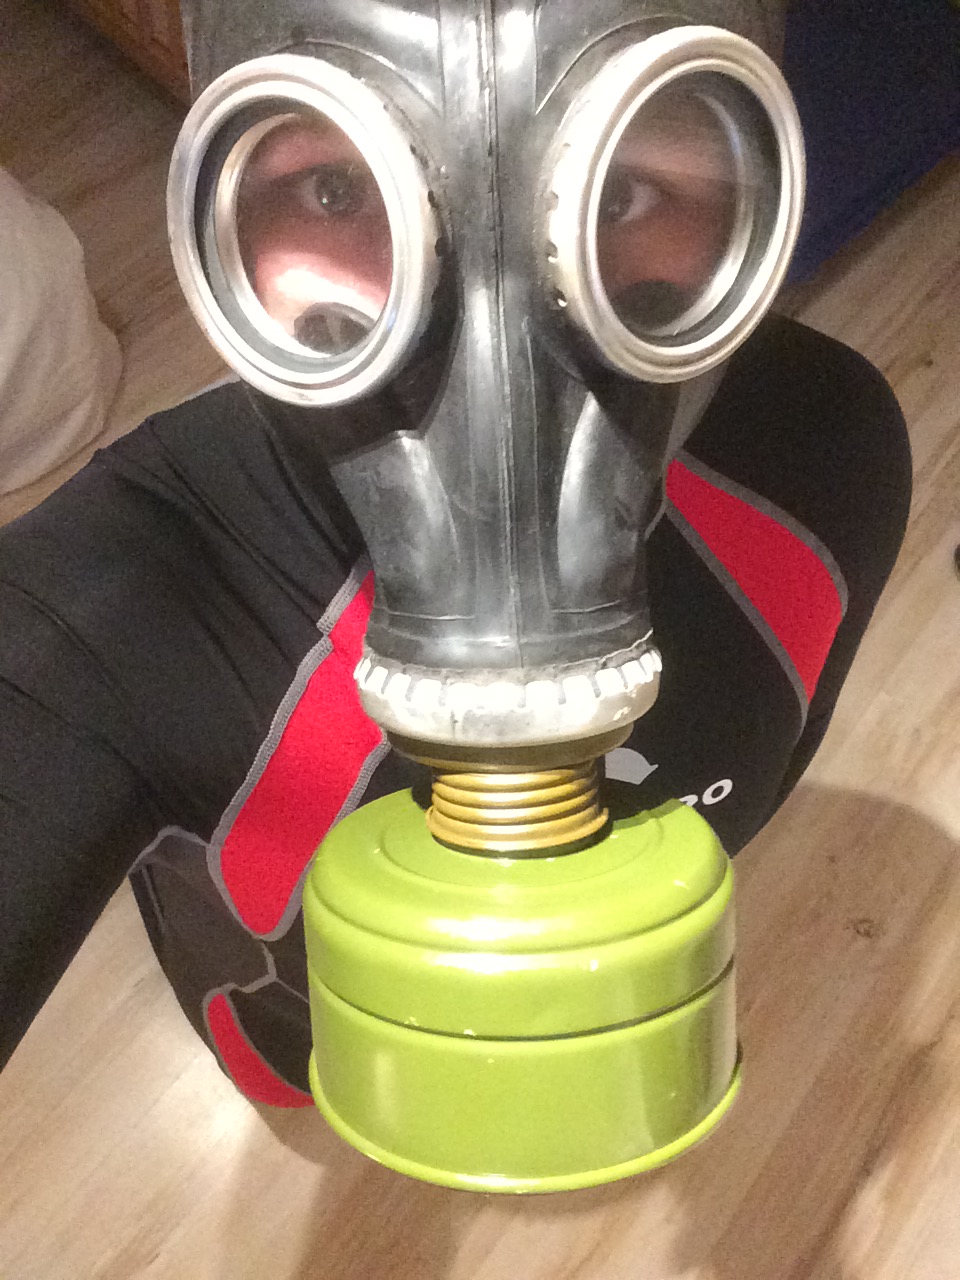 Scubapro Everflex Skin Suit + Gas Mask #1
